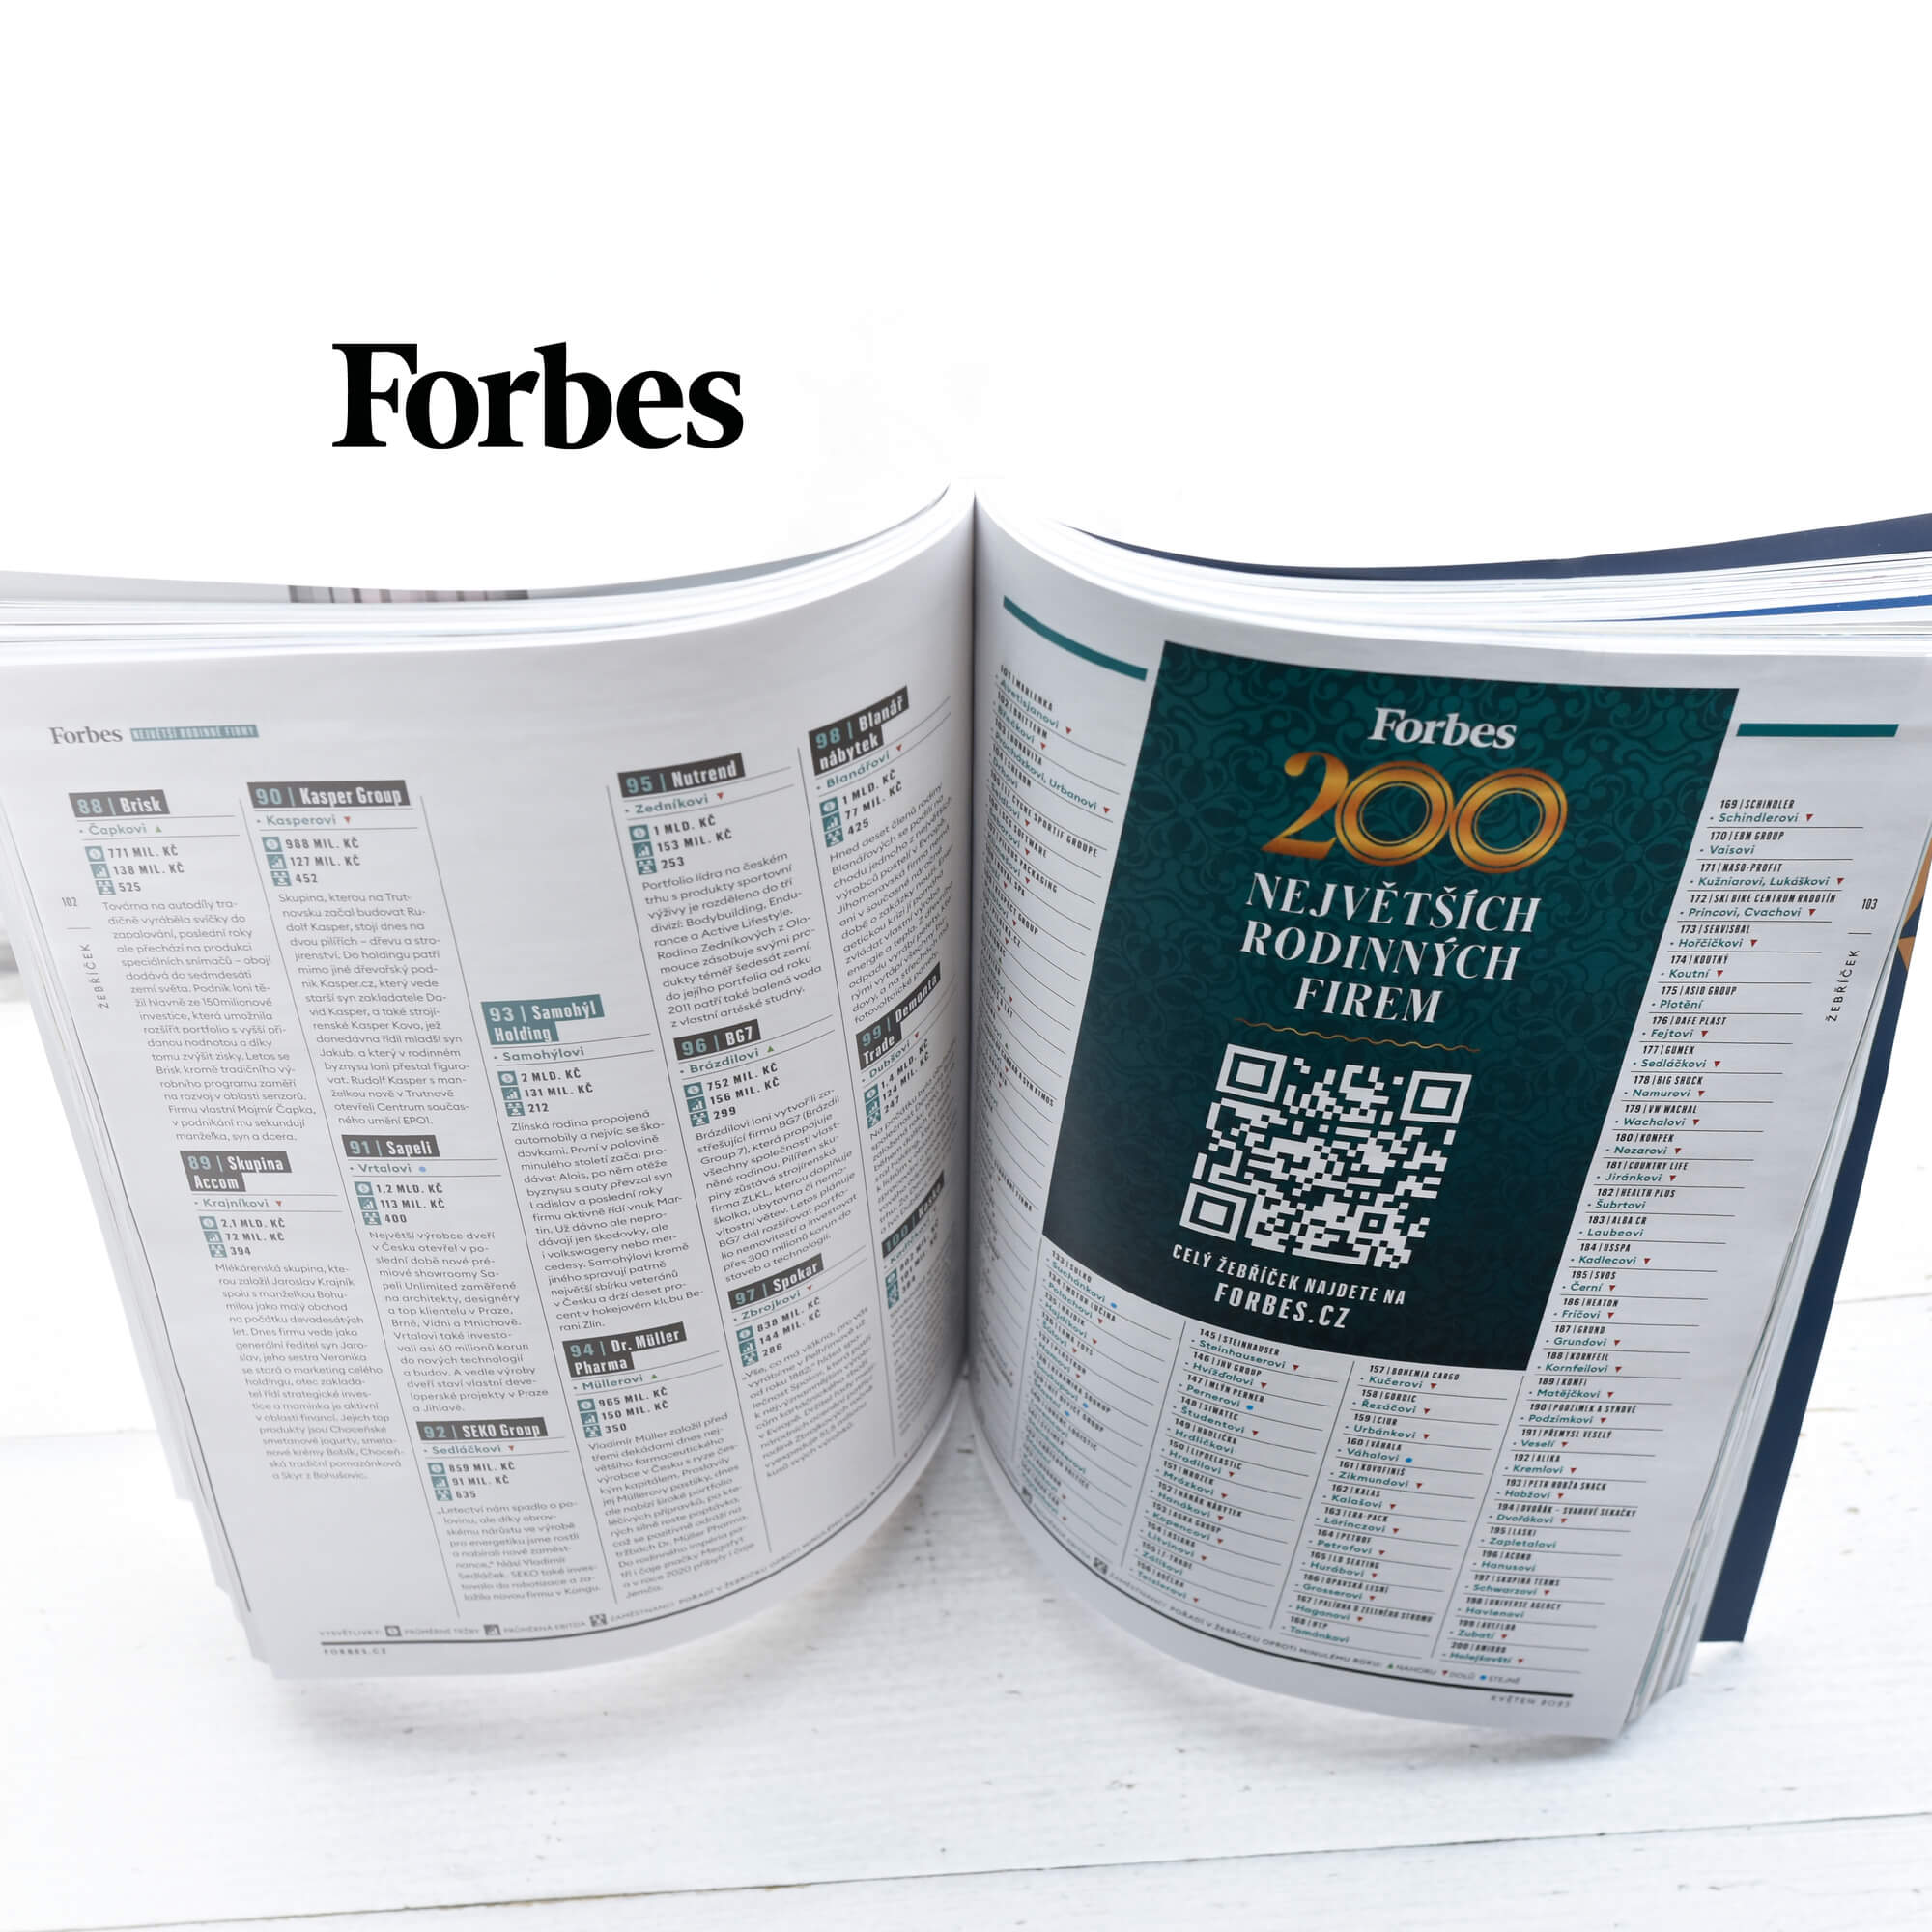 LIKO-S in der Forbes-Rangliste unter den 200 größten Familienunternehmen in Tschechien